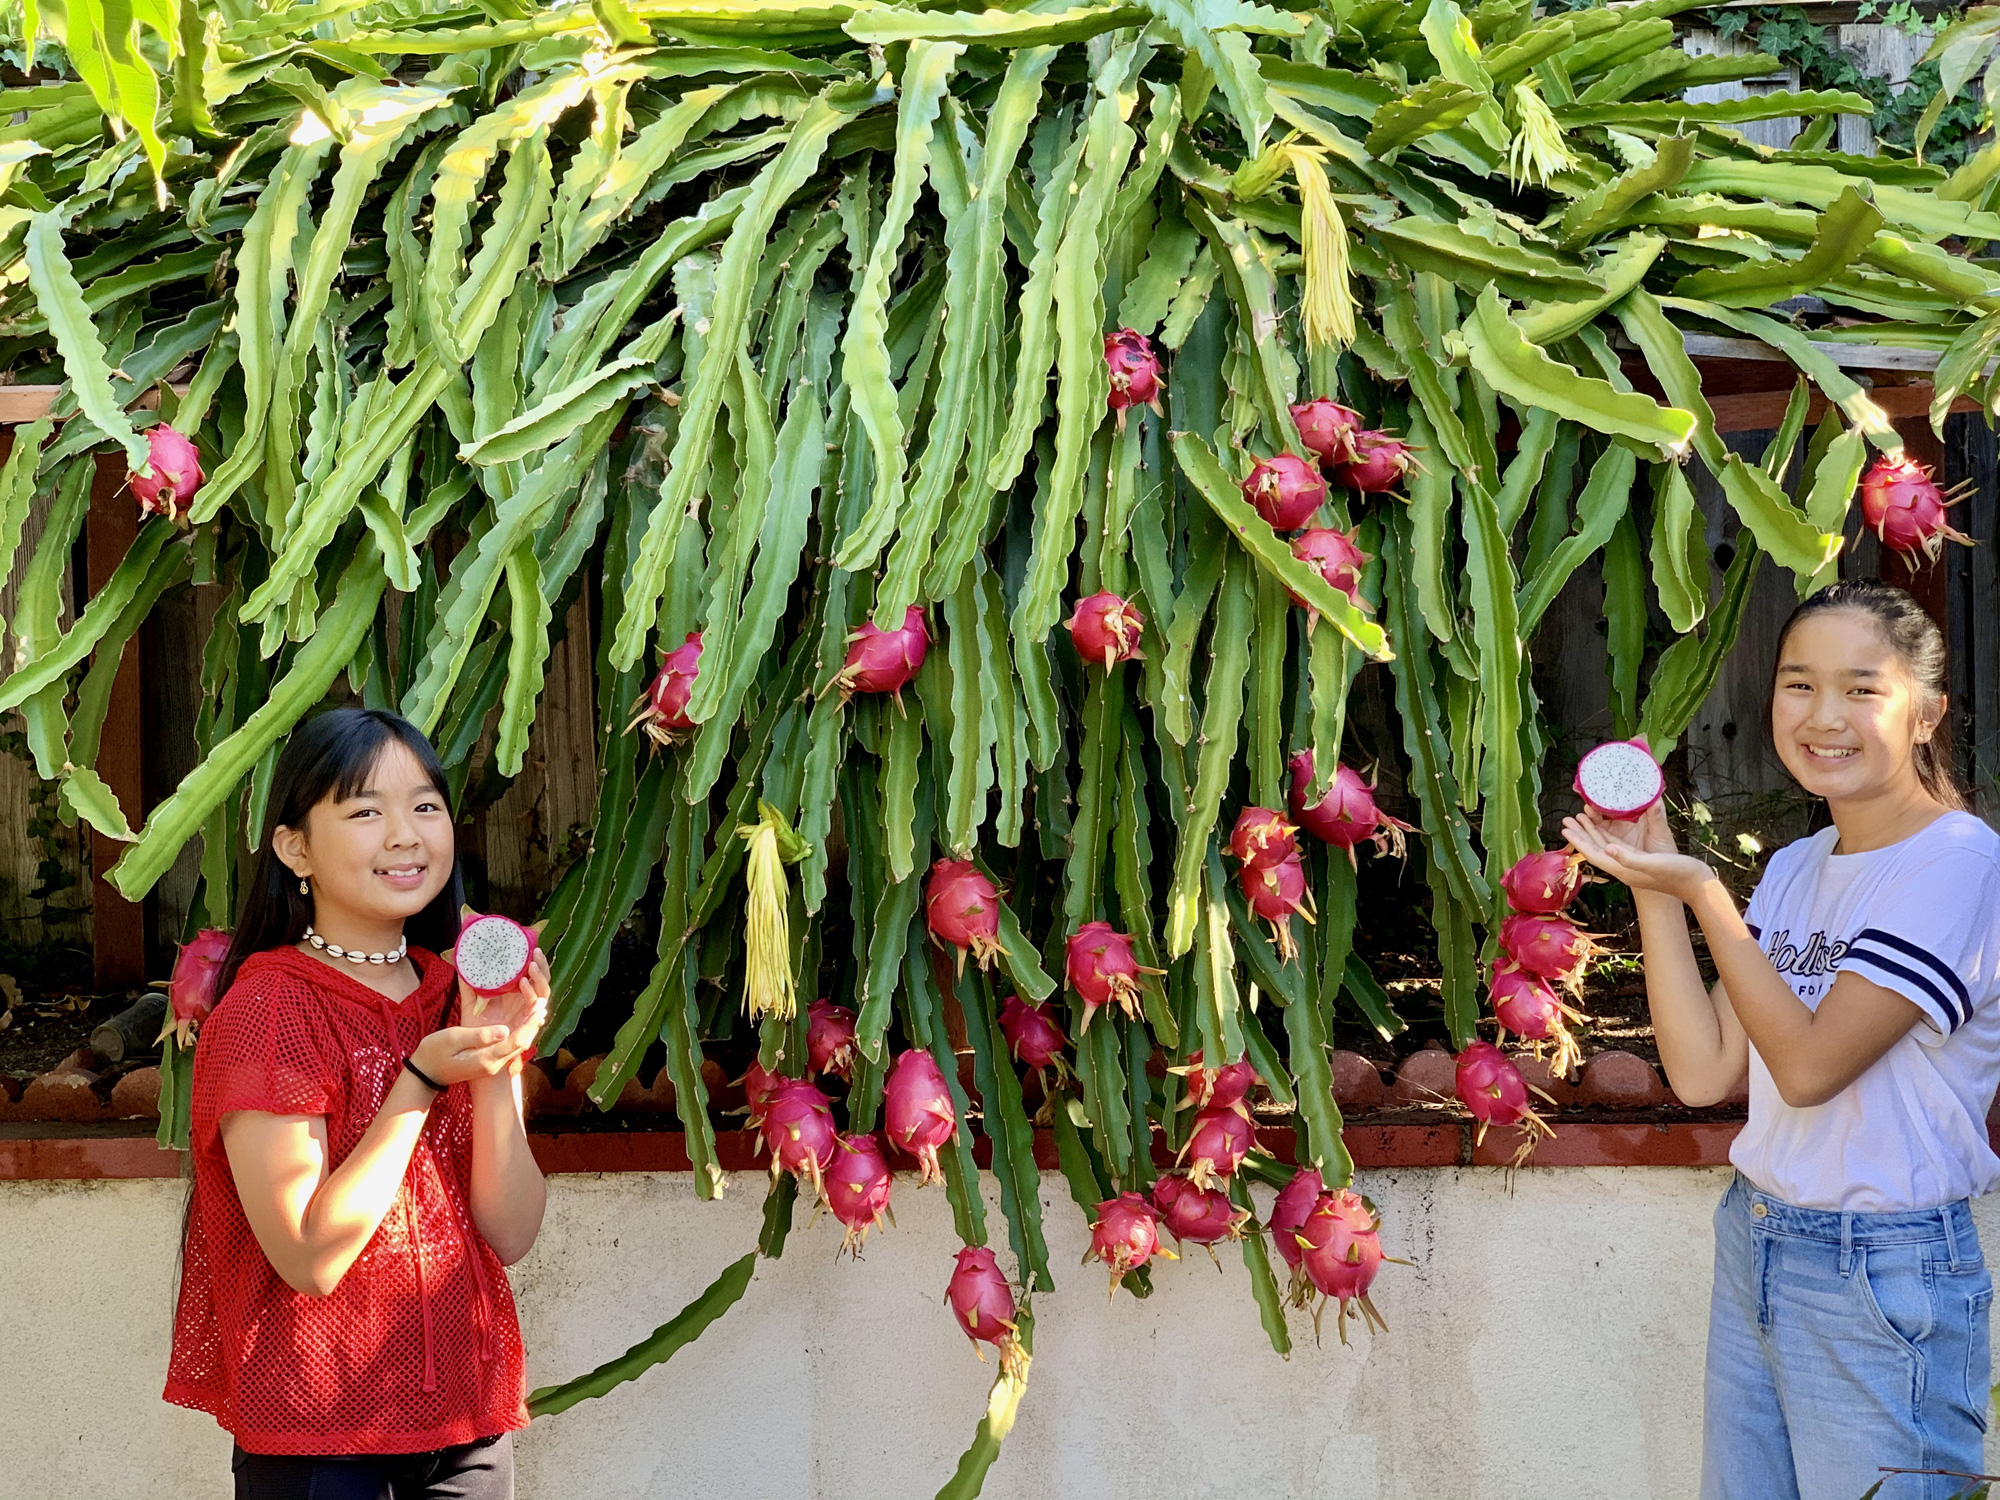 Vợ đảm ở Mỹ khoe vườn 450m2 ngập tràn hoa trái giống Việt, tiết lộ bí quyết vàng để cây đạt năng suất, quả trĩu trịt quanh năm - Ảnh 7.